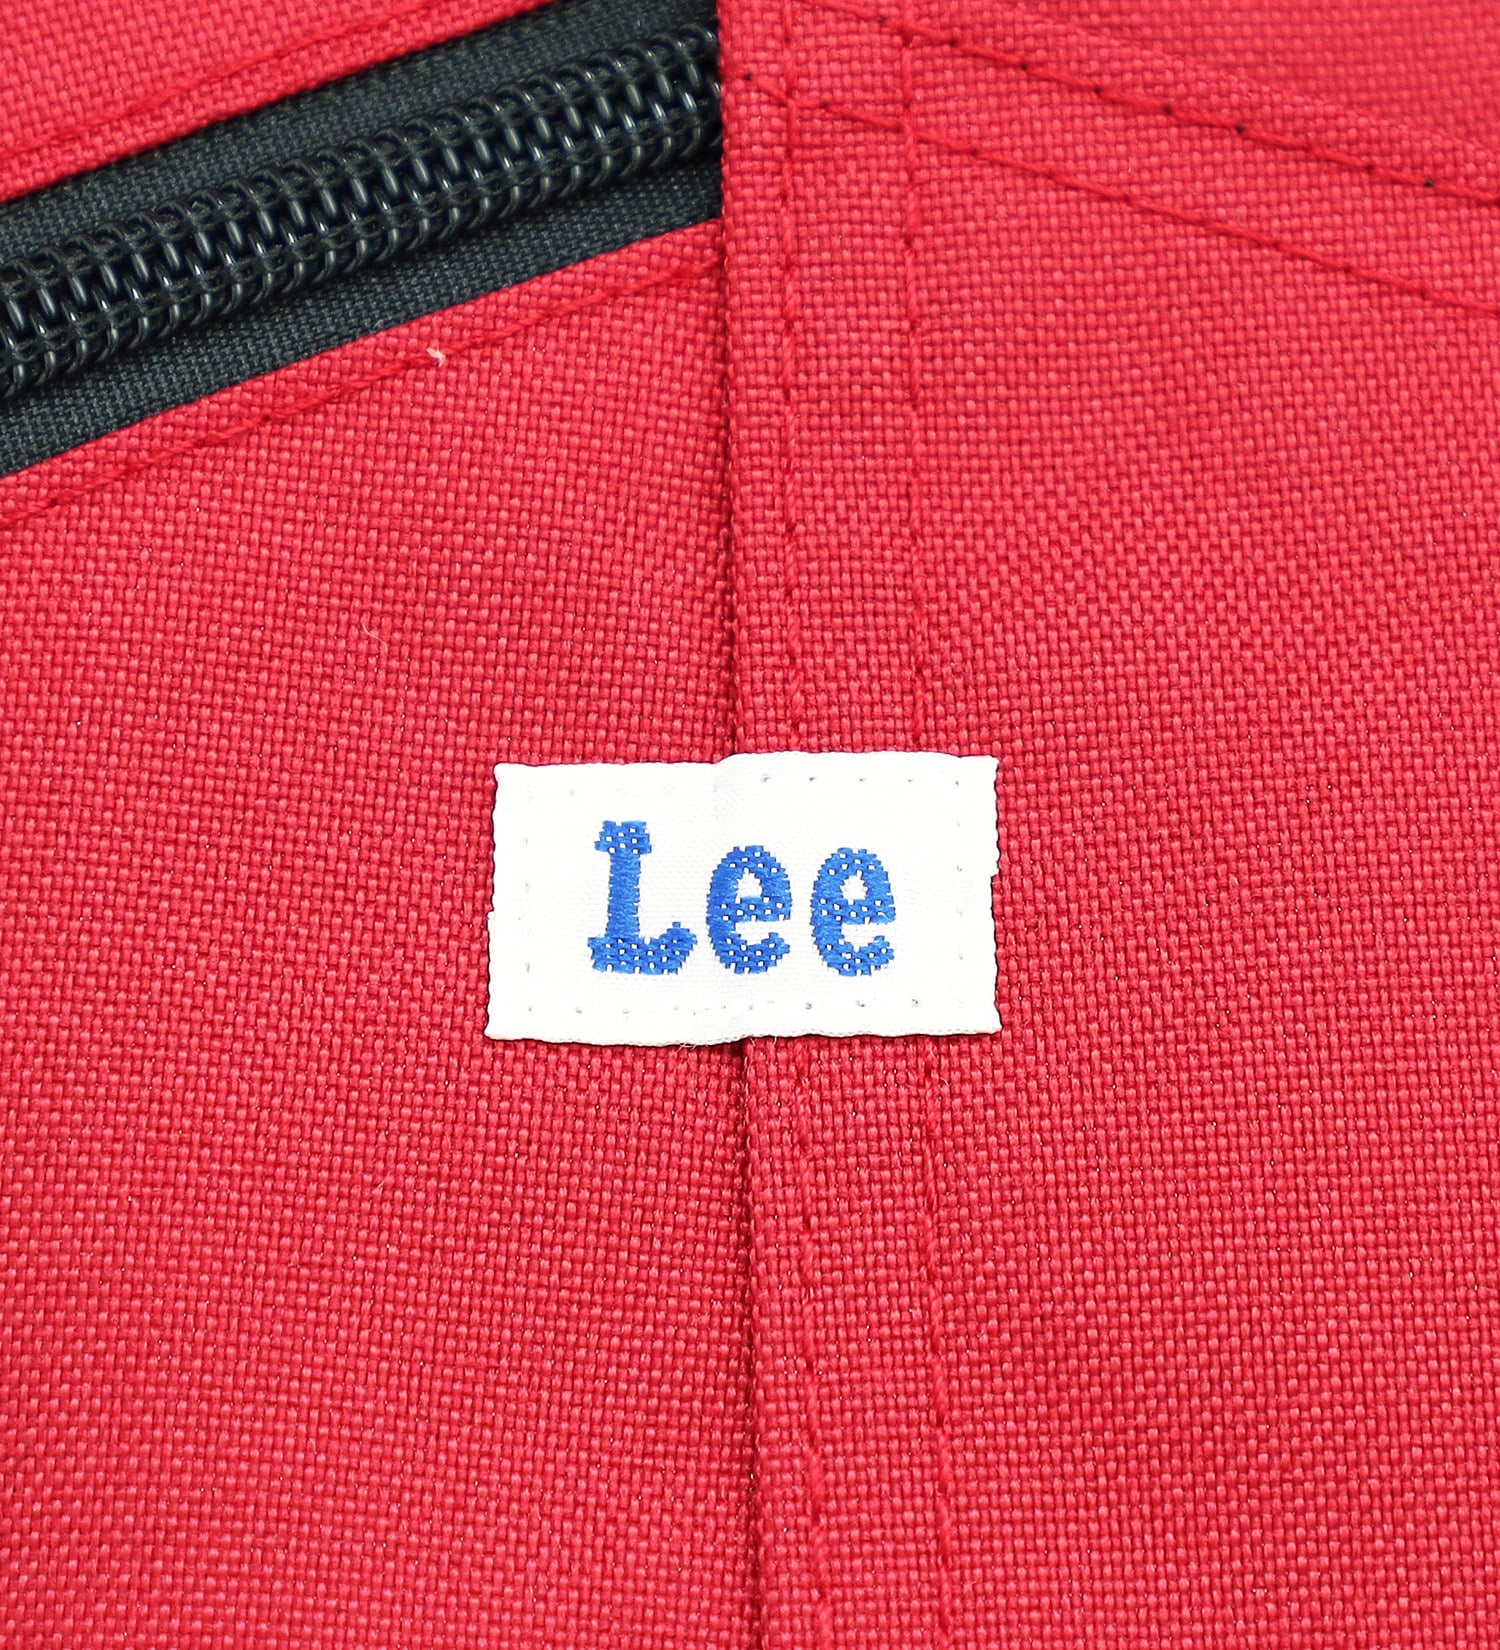 Lee(リー)のバックパック/リュック|バッグ/バックパック/リュック/メンズ|レッド